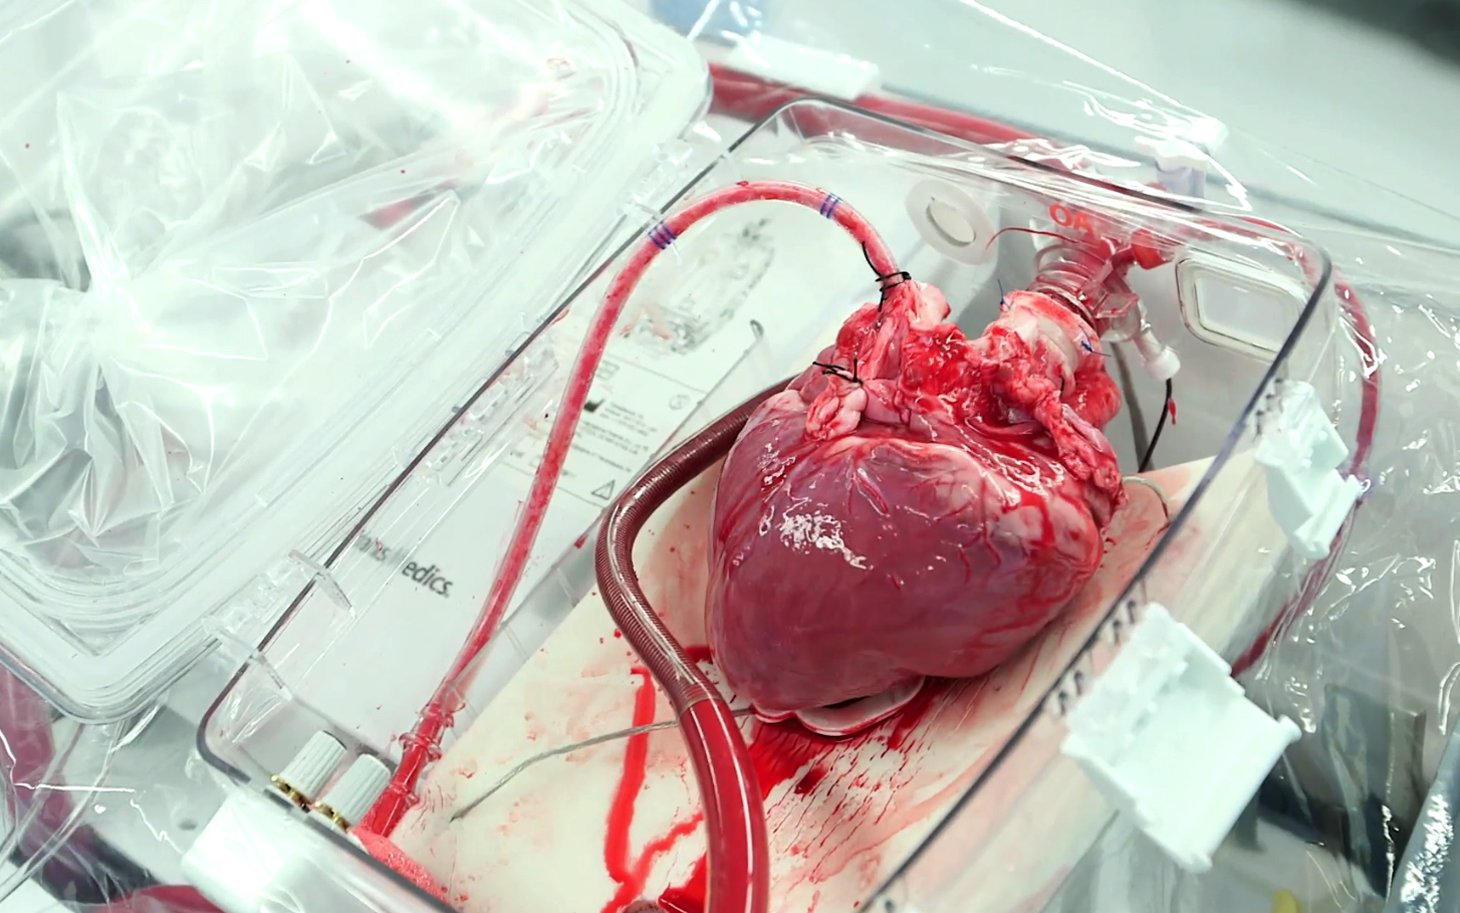 Благодаря аппарату “сердце в коробке” не происходит отмирание клеток, так как кровь вместе с кислородом постоянно циркулирует в нем